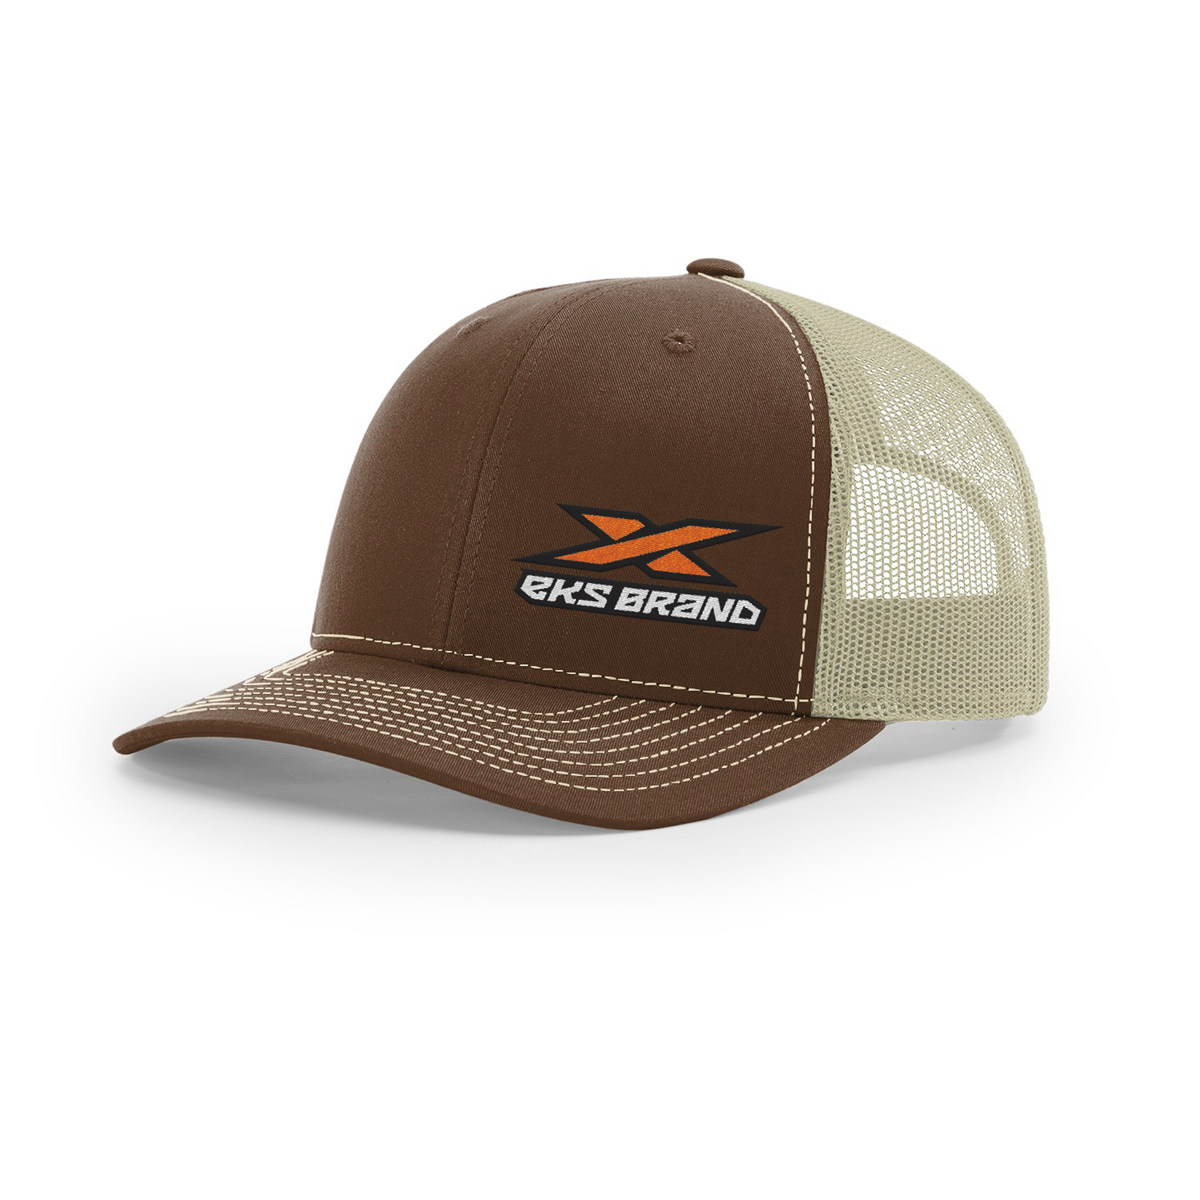 EKS Brand snap back, half mesh hat.